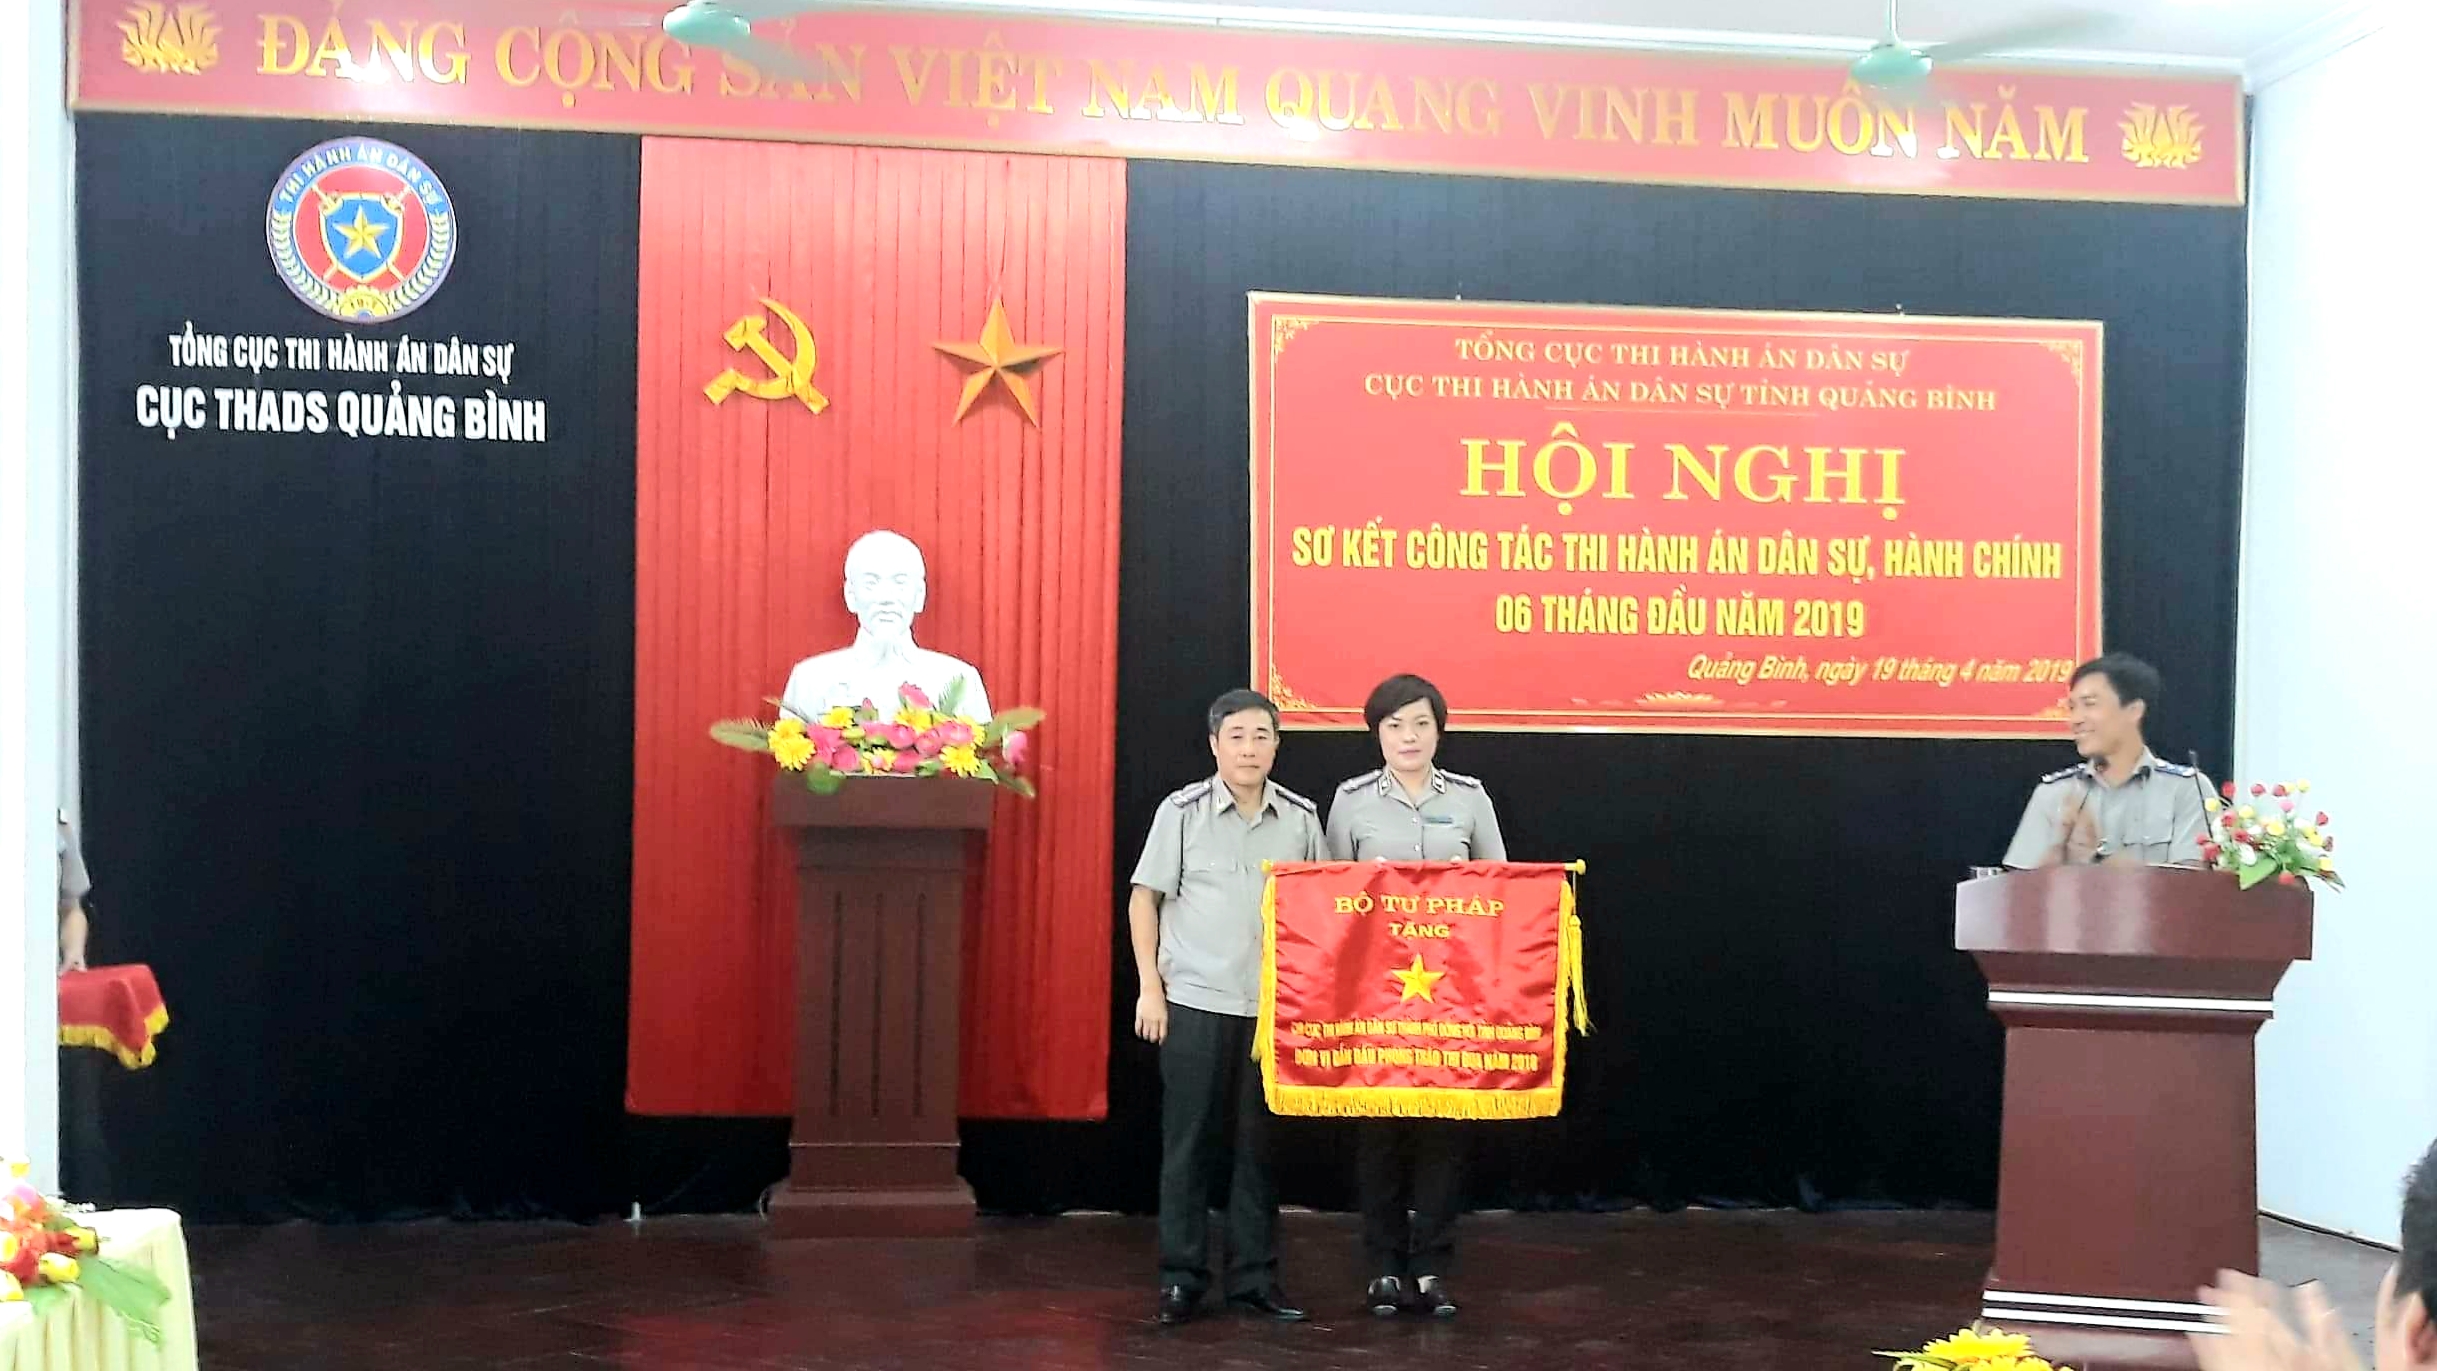 Cục Thi hành án dân sự tỉnh Quảng Bình tổ chức Hội nghị sơ kết công tác Thi hành án dân sự, hành chính 6 tháng đầu năm 2019